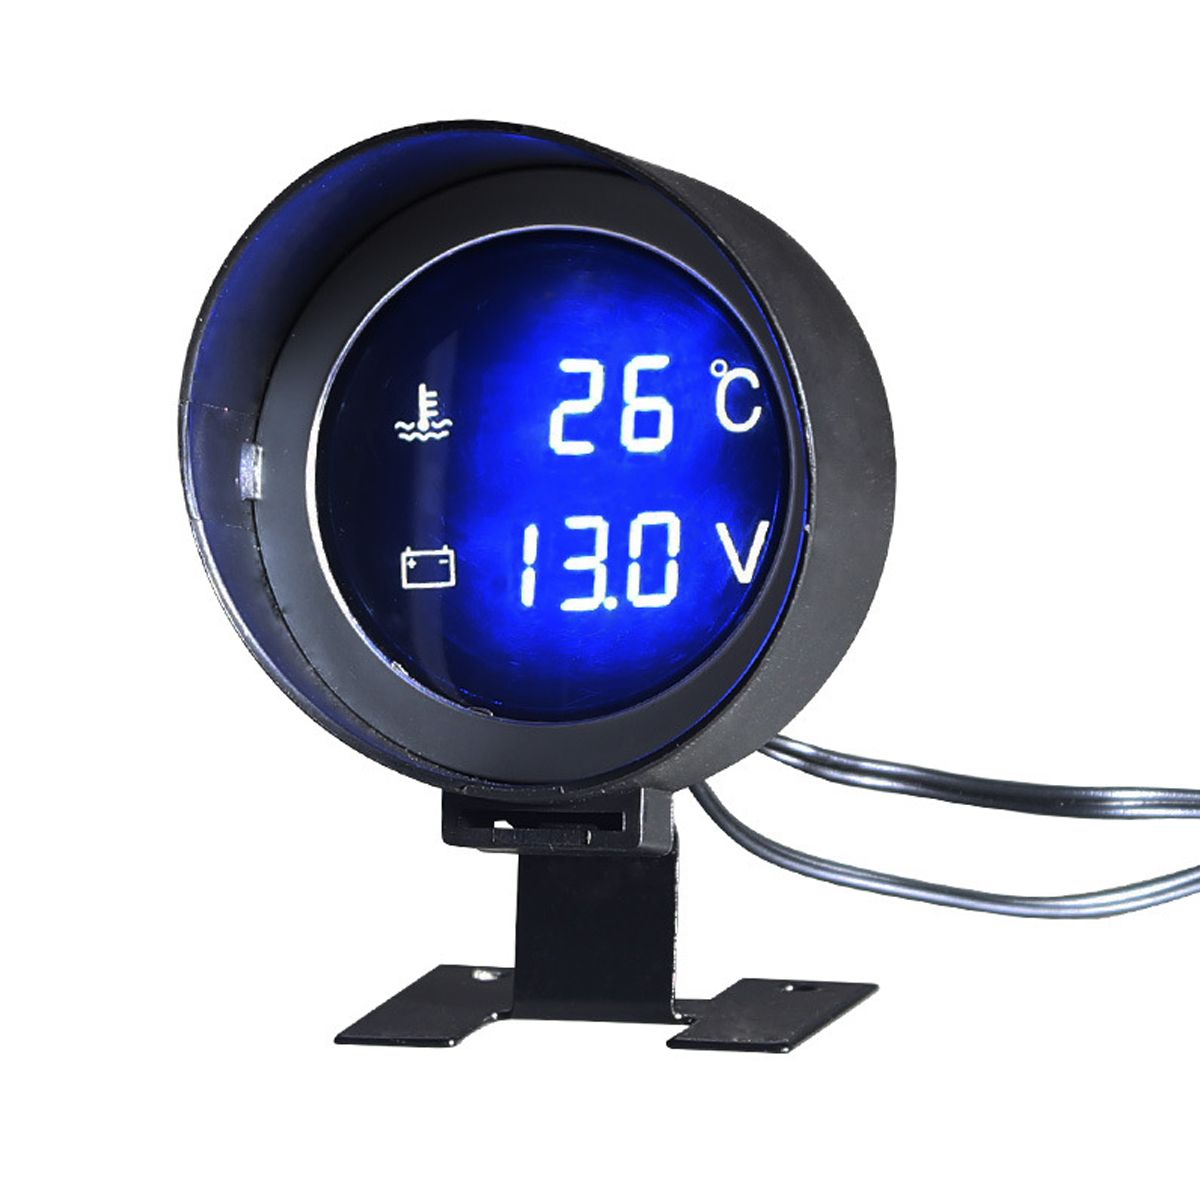 Car-Water-Temp-Temperature-Meter-amp-Voltmeter-Gauge-Blue-LED-Digital-Display-1652931